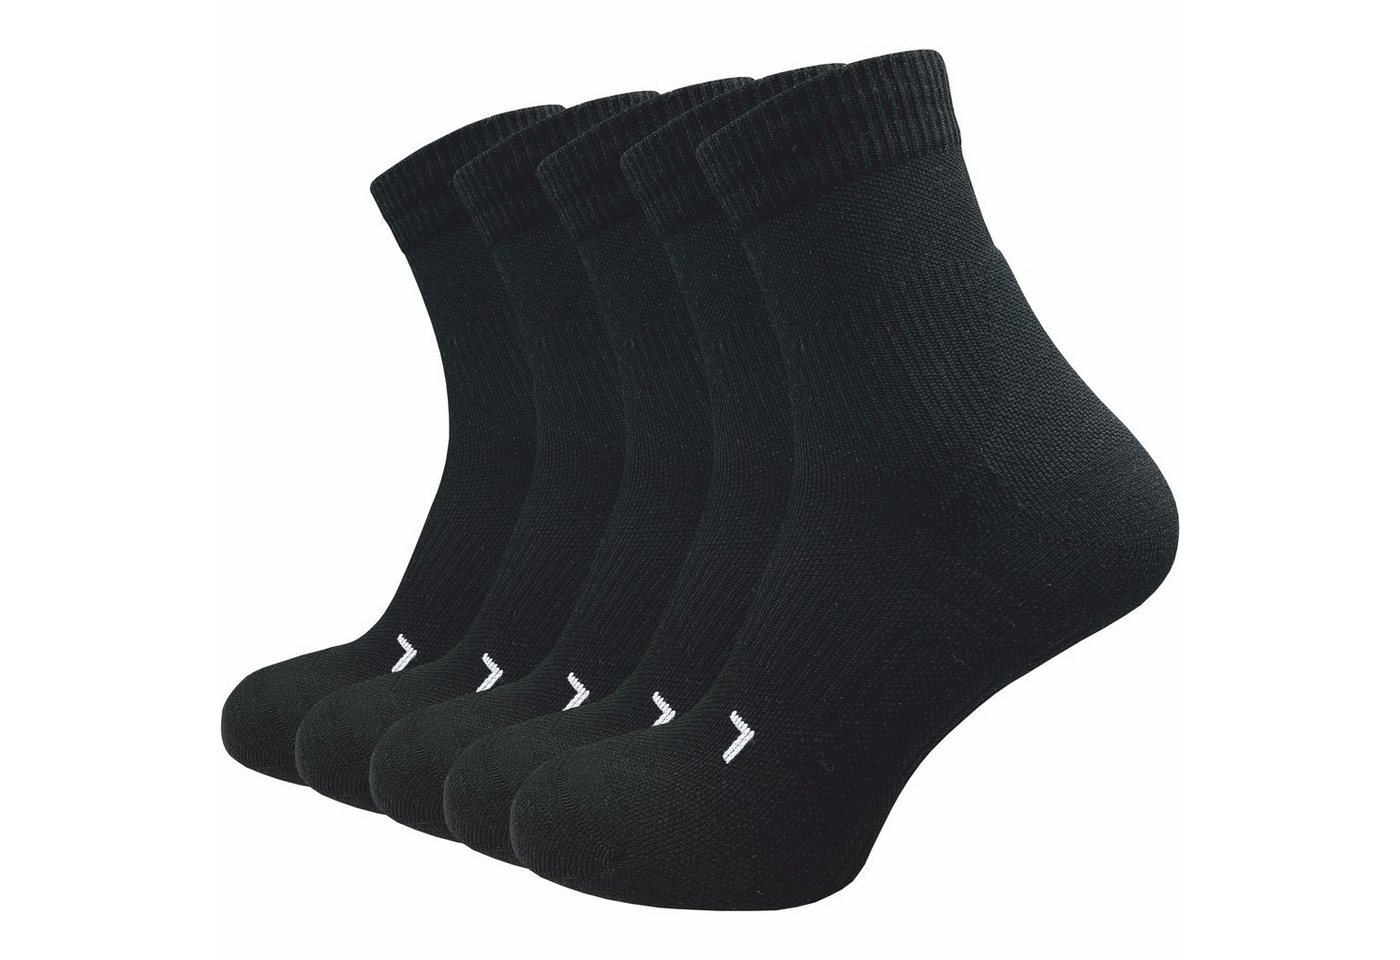 GAWILO Laufsocken für Herren mit Kompression und Polsterung in bunt, schwarz & weiß (5 Paar) Anatomisch korrekt für den linken und rechten Fuß gestrickt von GAWILO